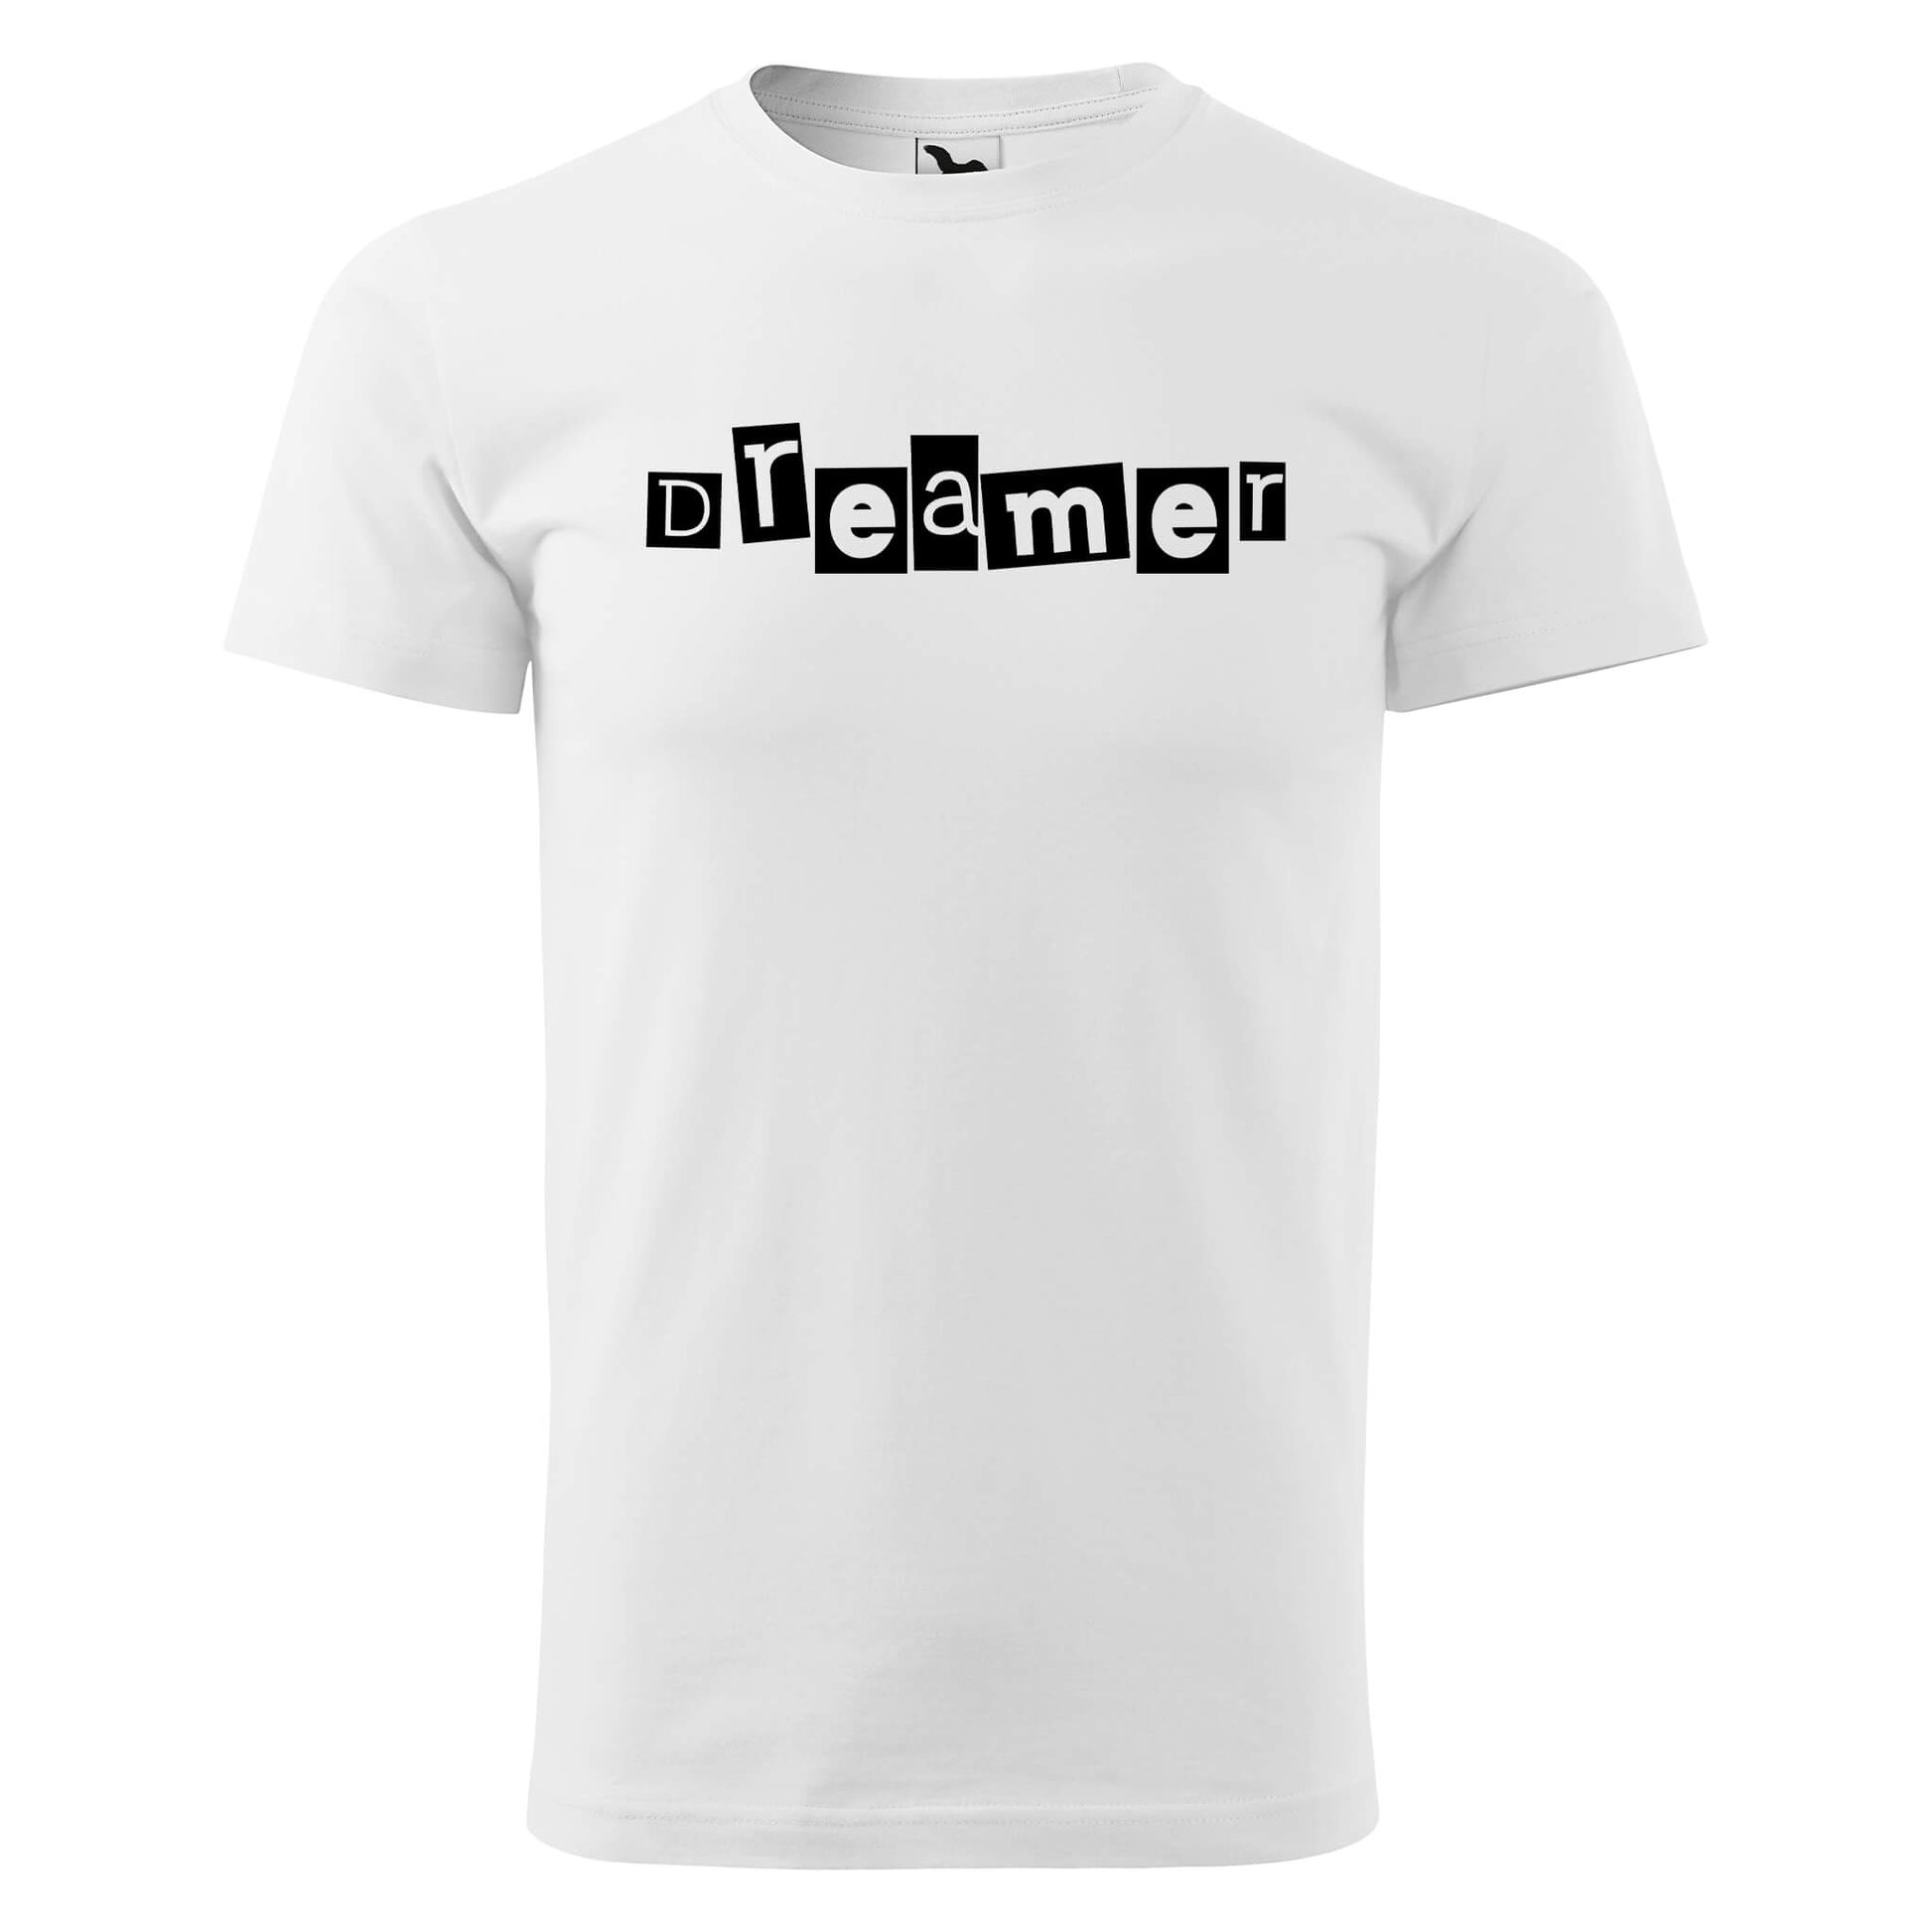 T-shirt - dreamer - rvdesignprint